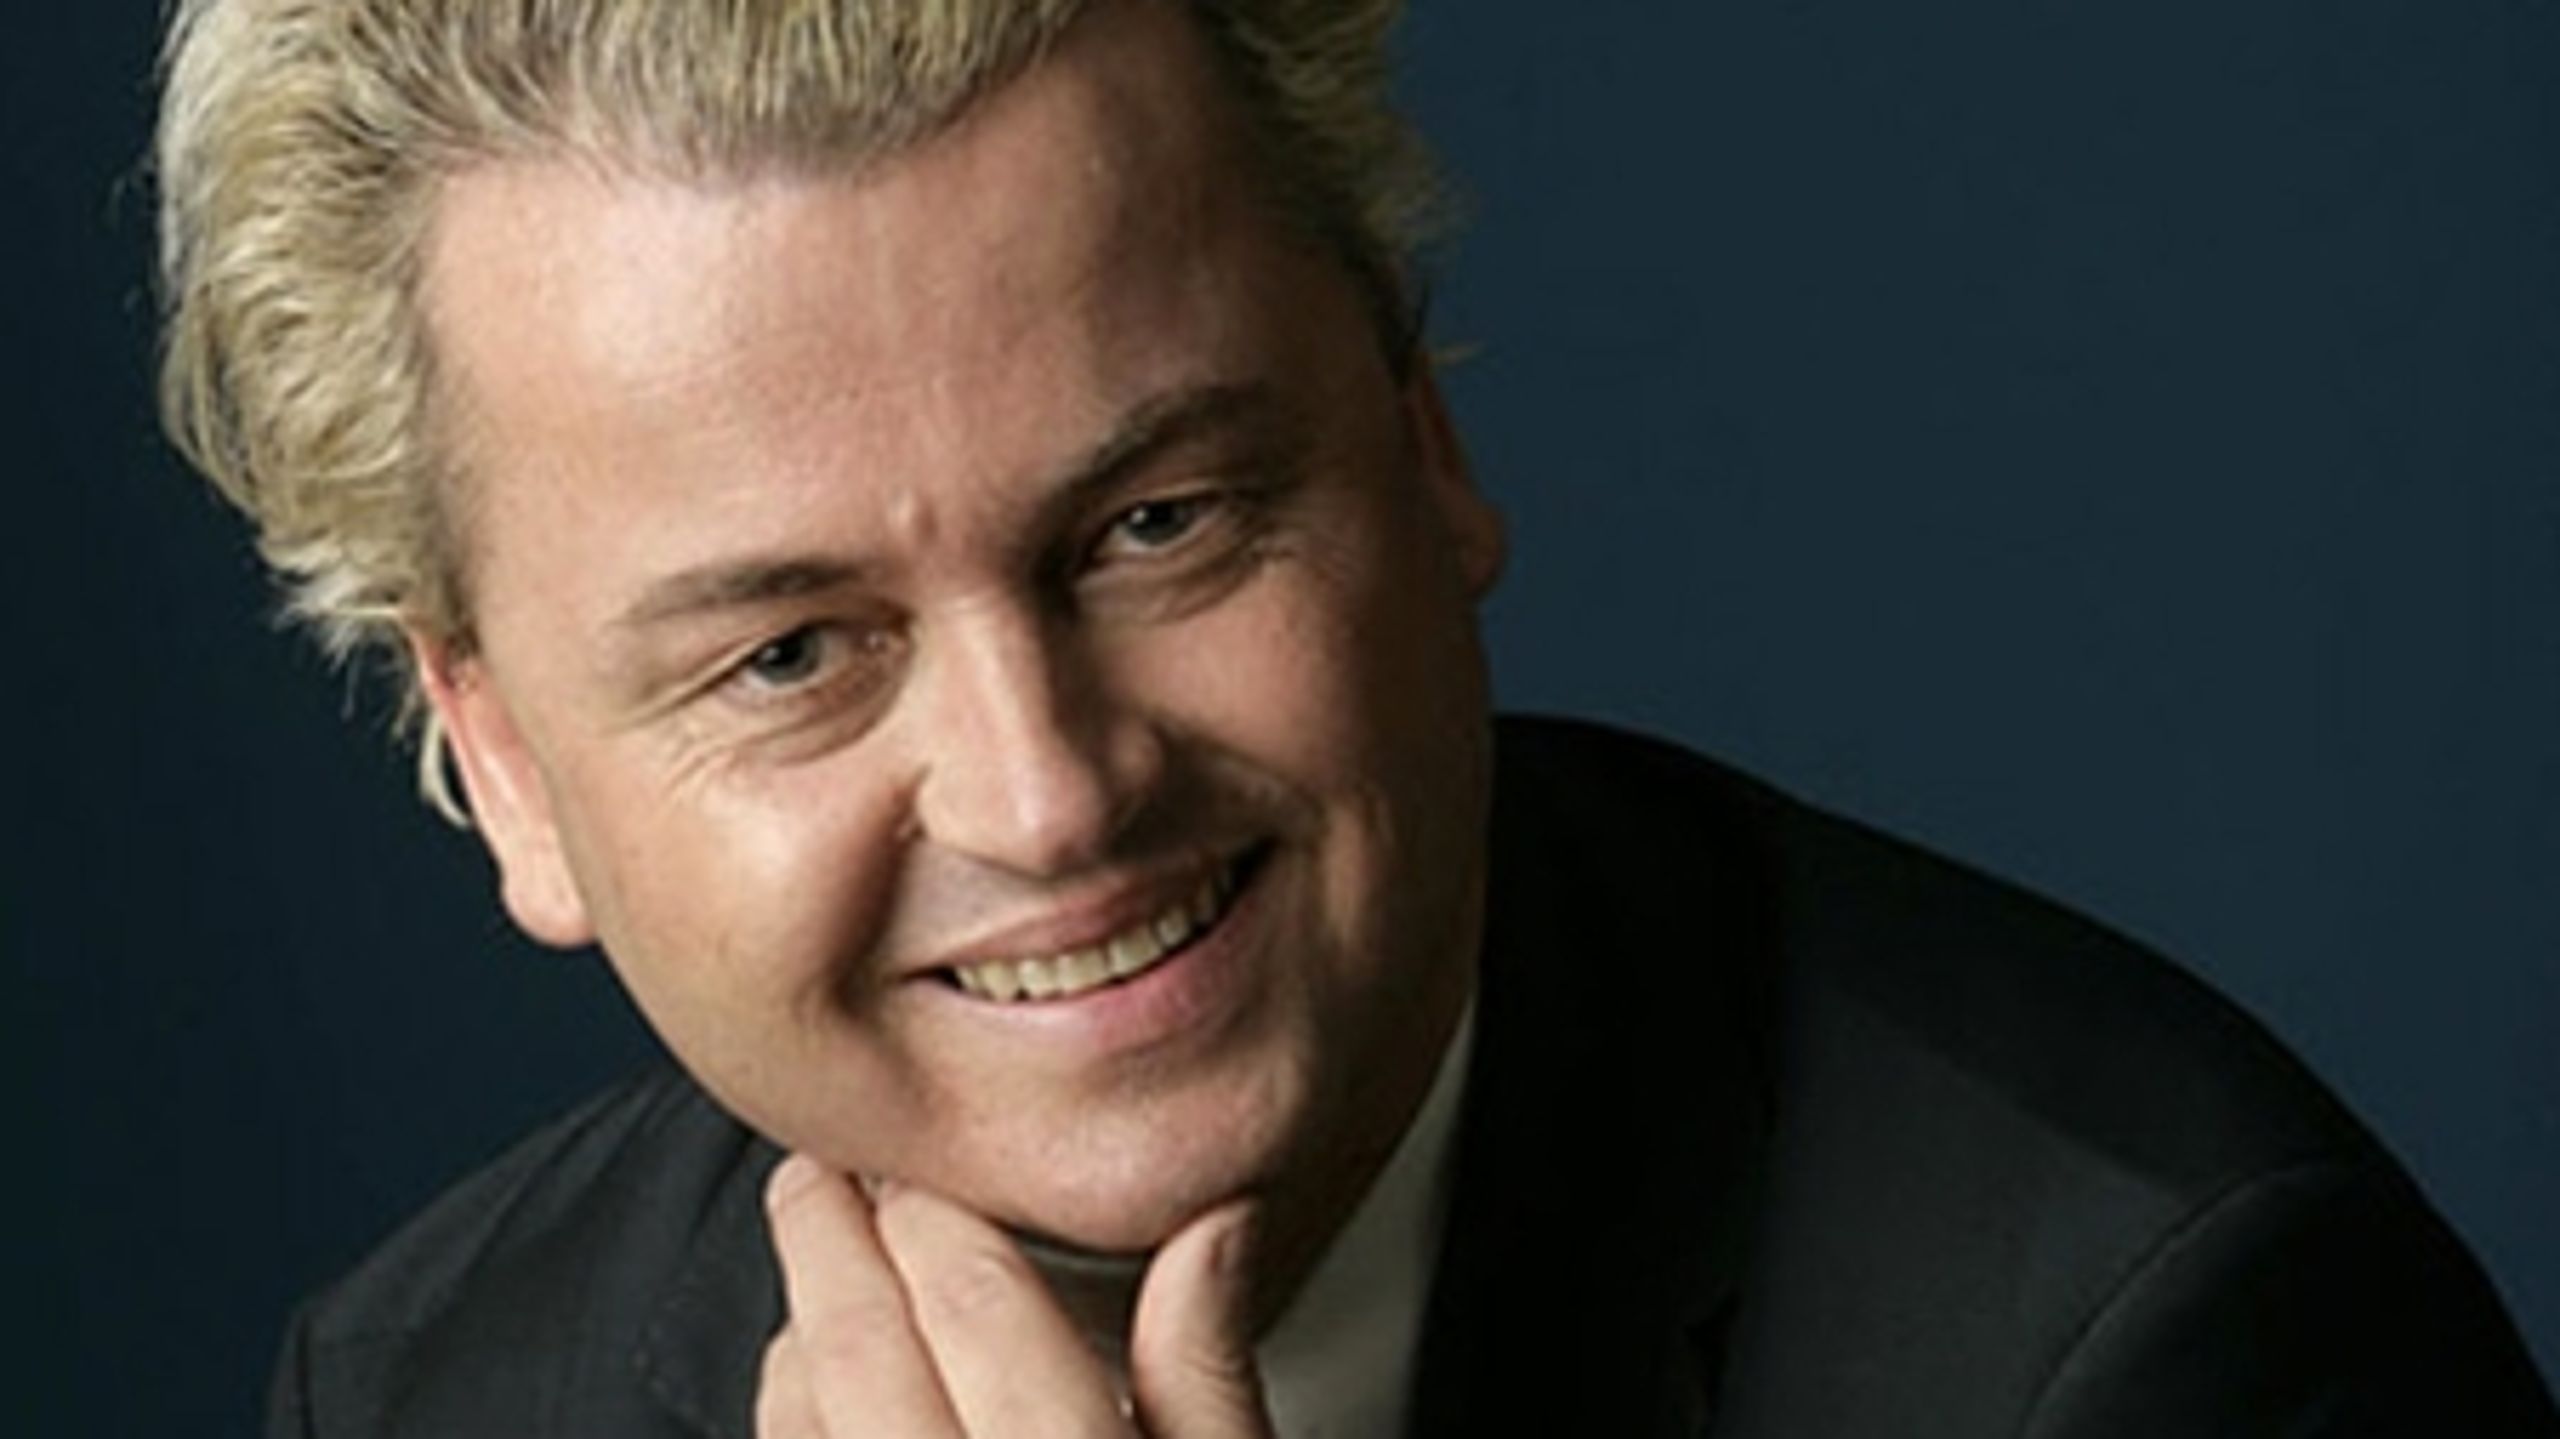 Skal - skal ikke. Der hersker intern splid hos De Konservative med hensyn til Geert Wilders' eventuelle deltagelse i den danske konference til efter&#229;ret.